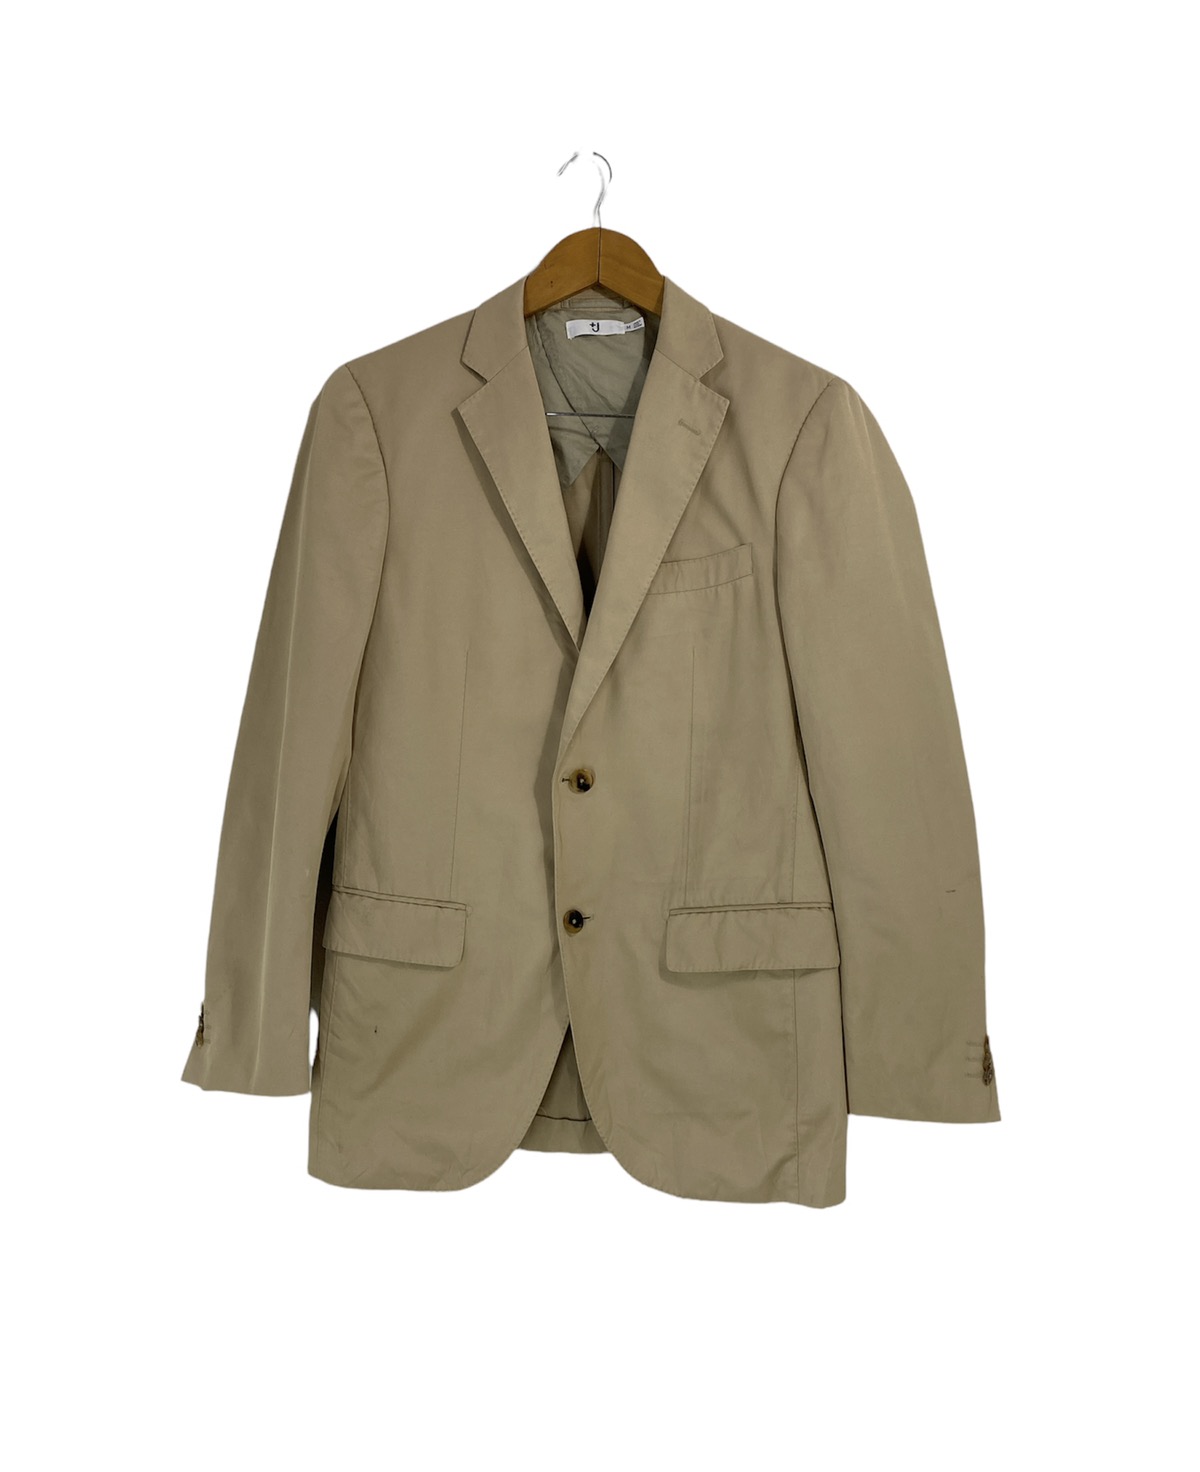 Jil Sander X Uniqlo Suit Jacket Design Two Button Design - 1